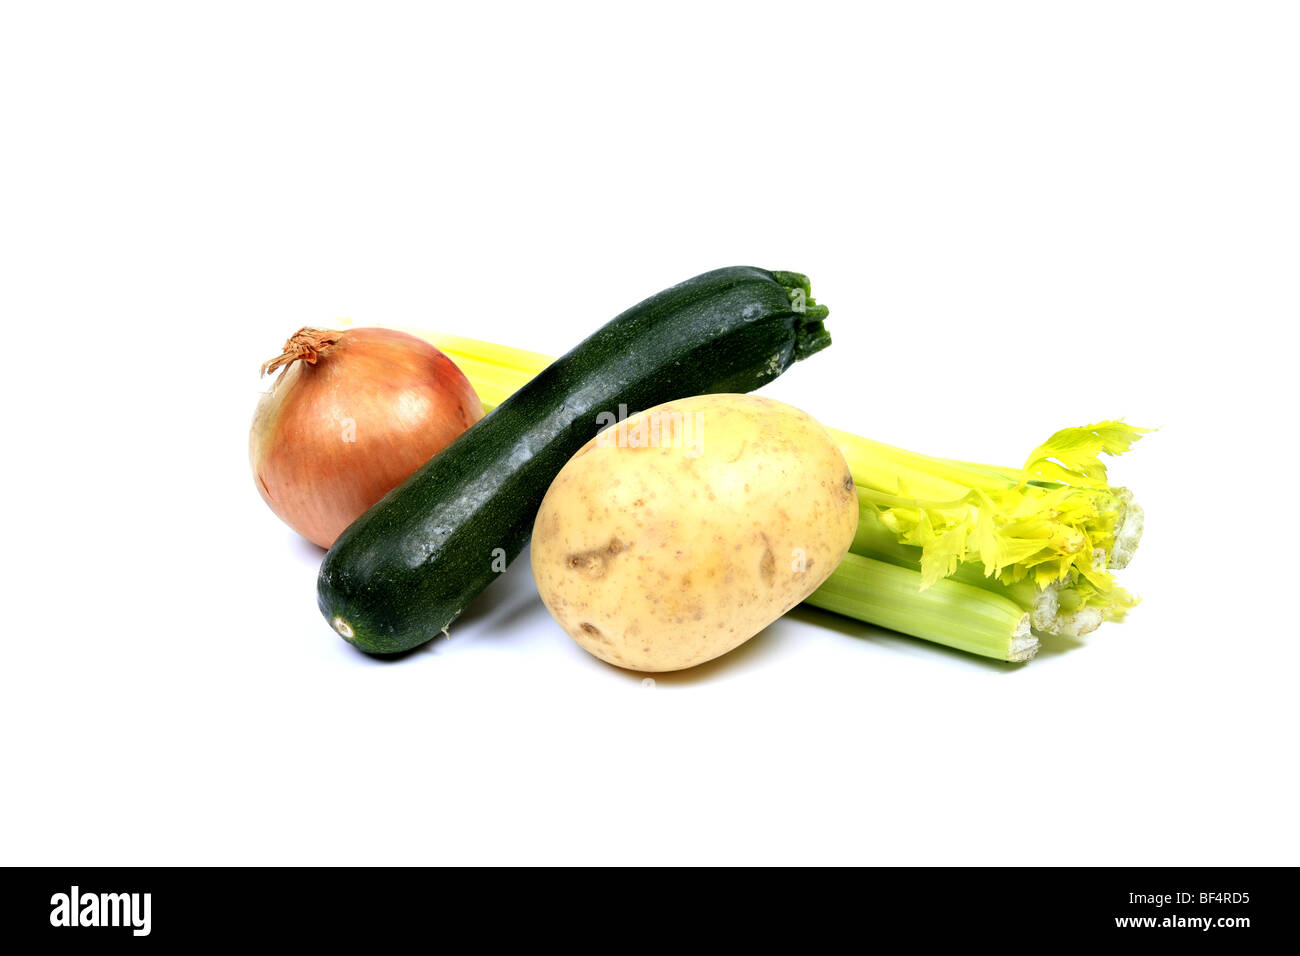 Verdure ora disponibile nei nostri negozi - onion di patate e sedano Zucchine Zucchine o Foto Stock